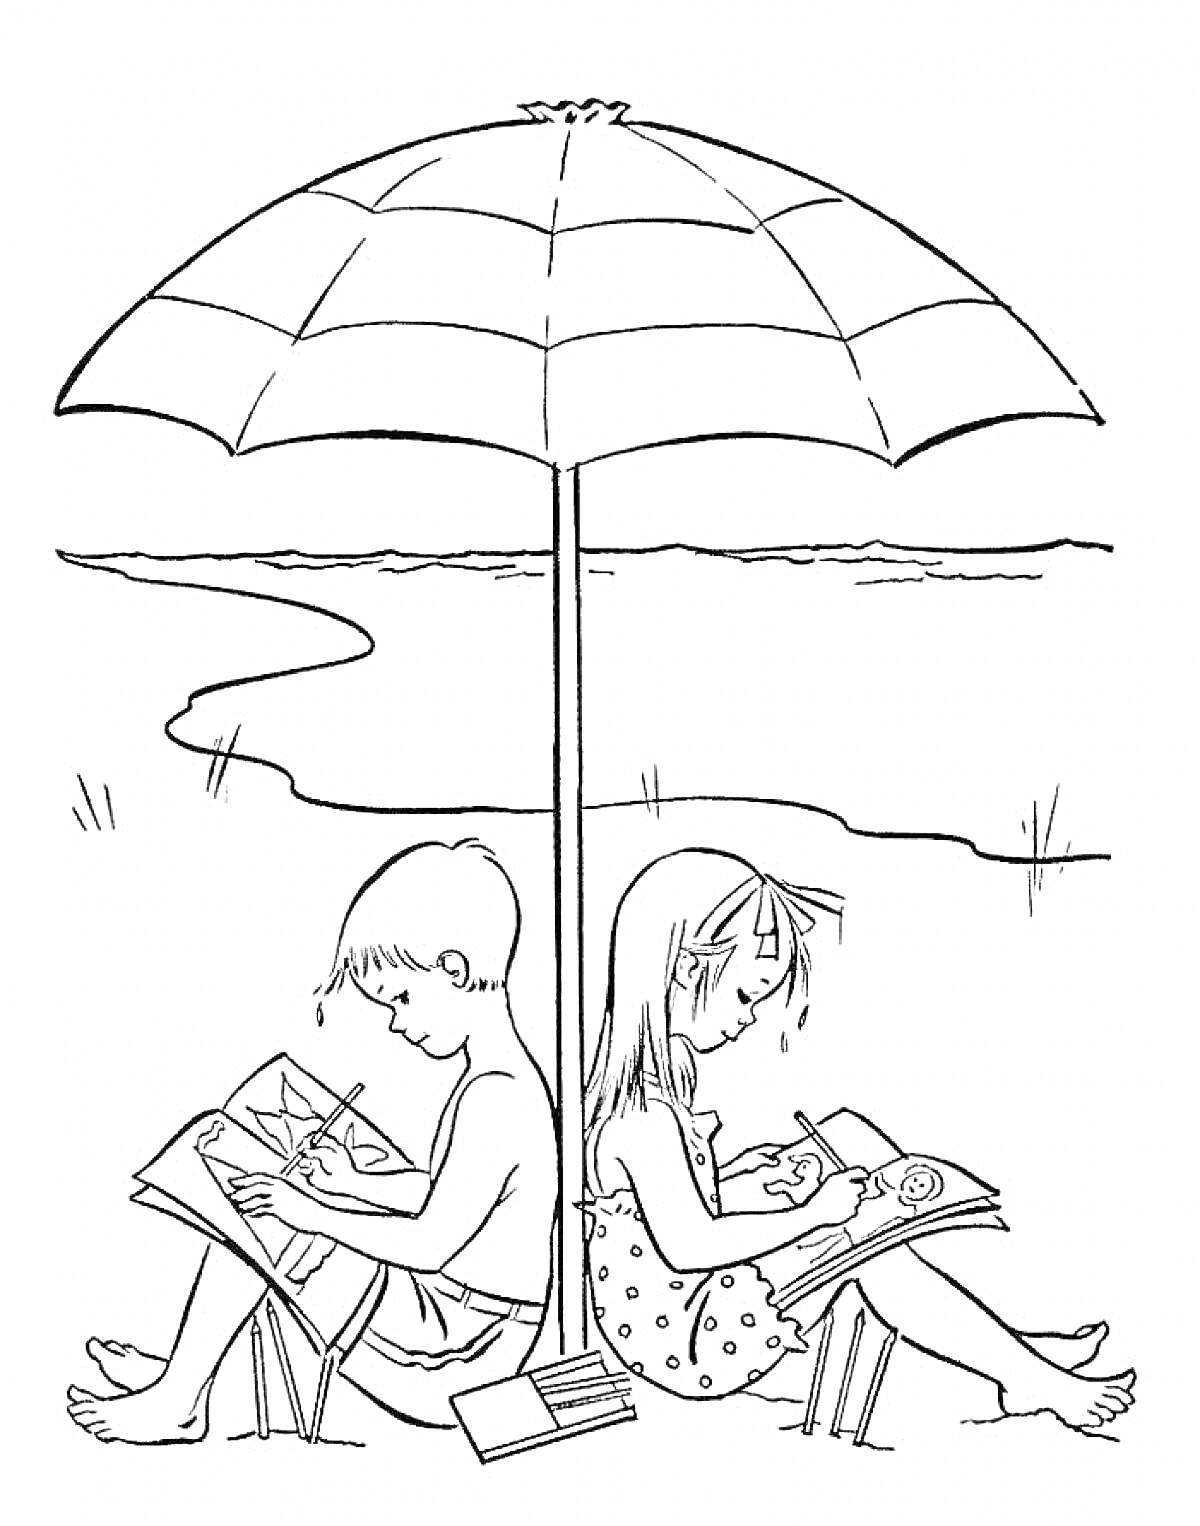 Дети под зонтом на пляже рисуют в альбомах